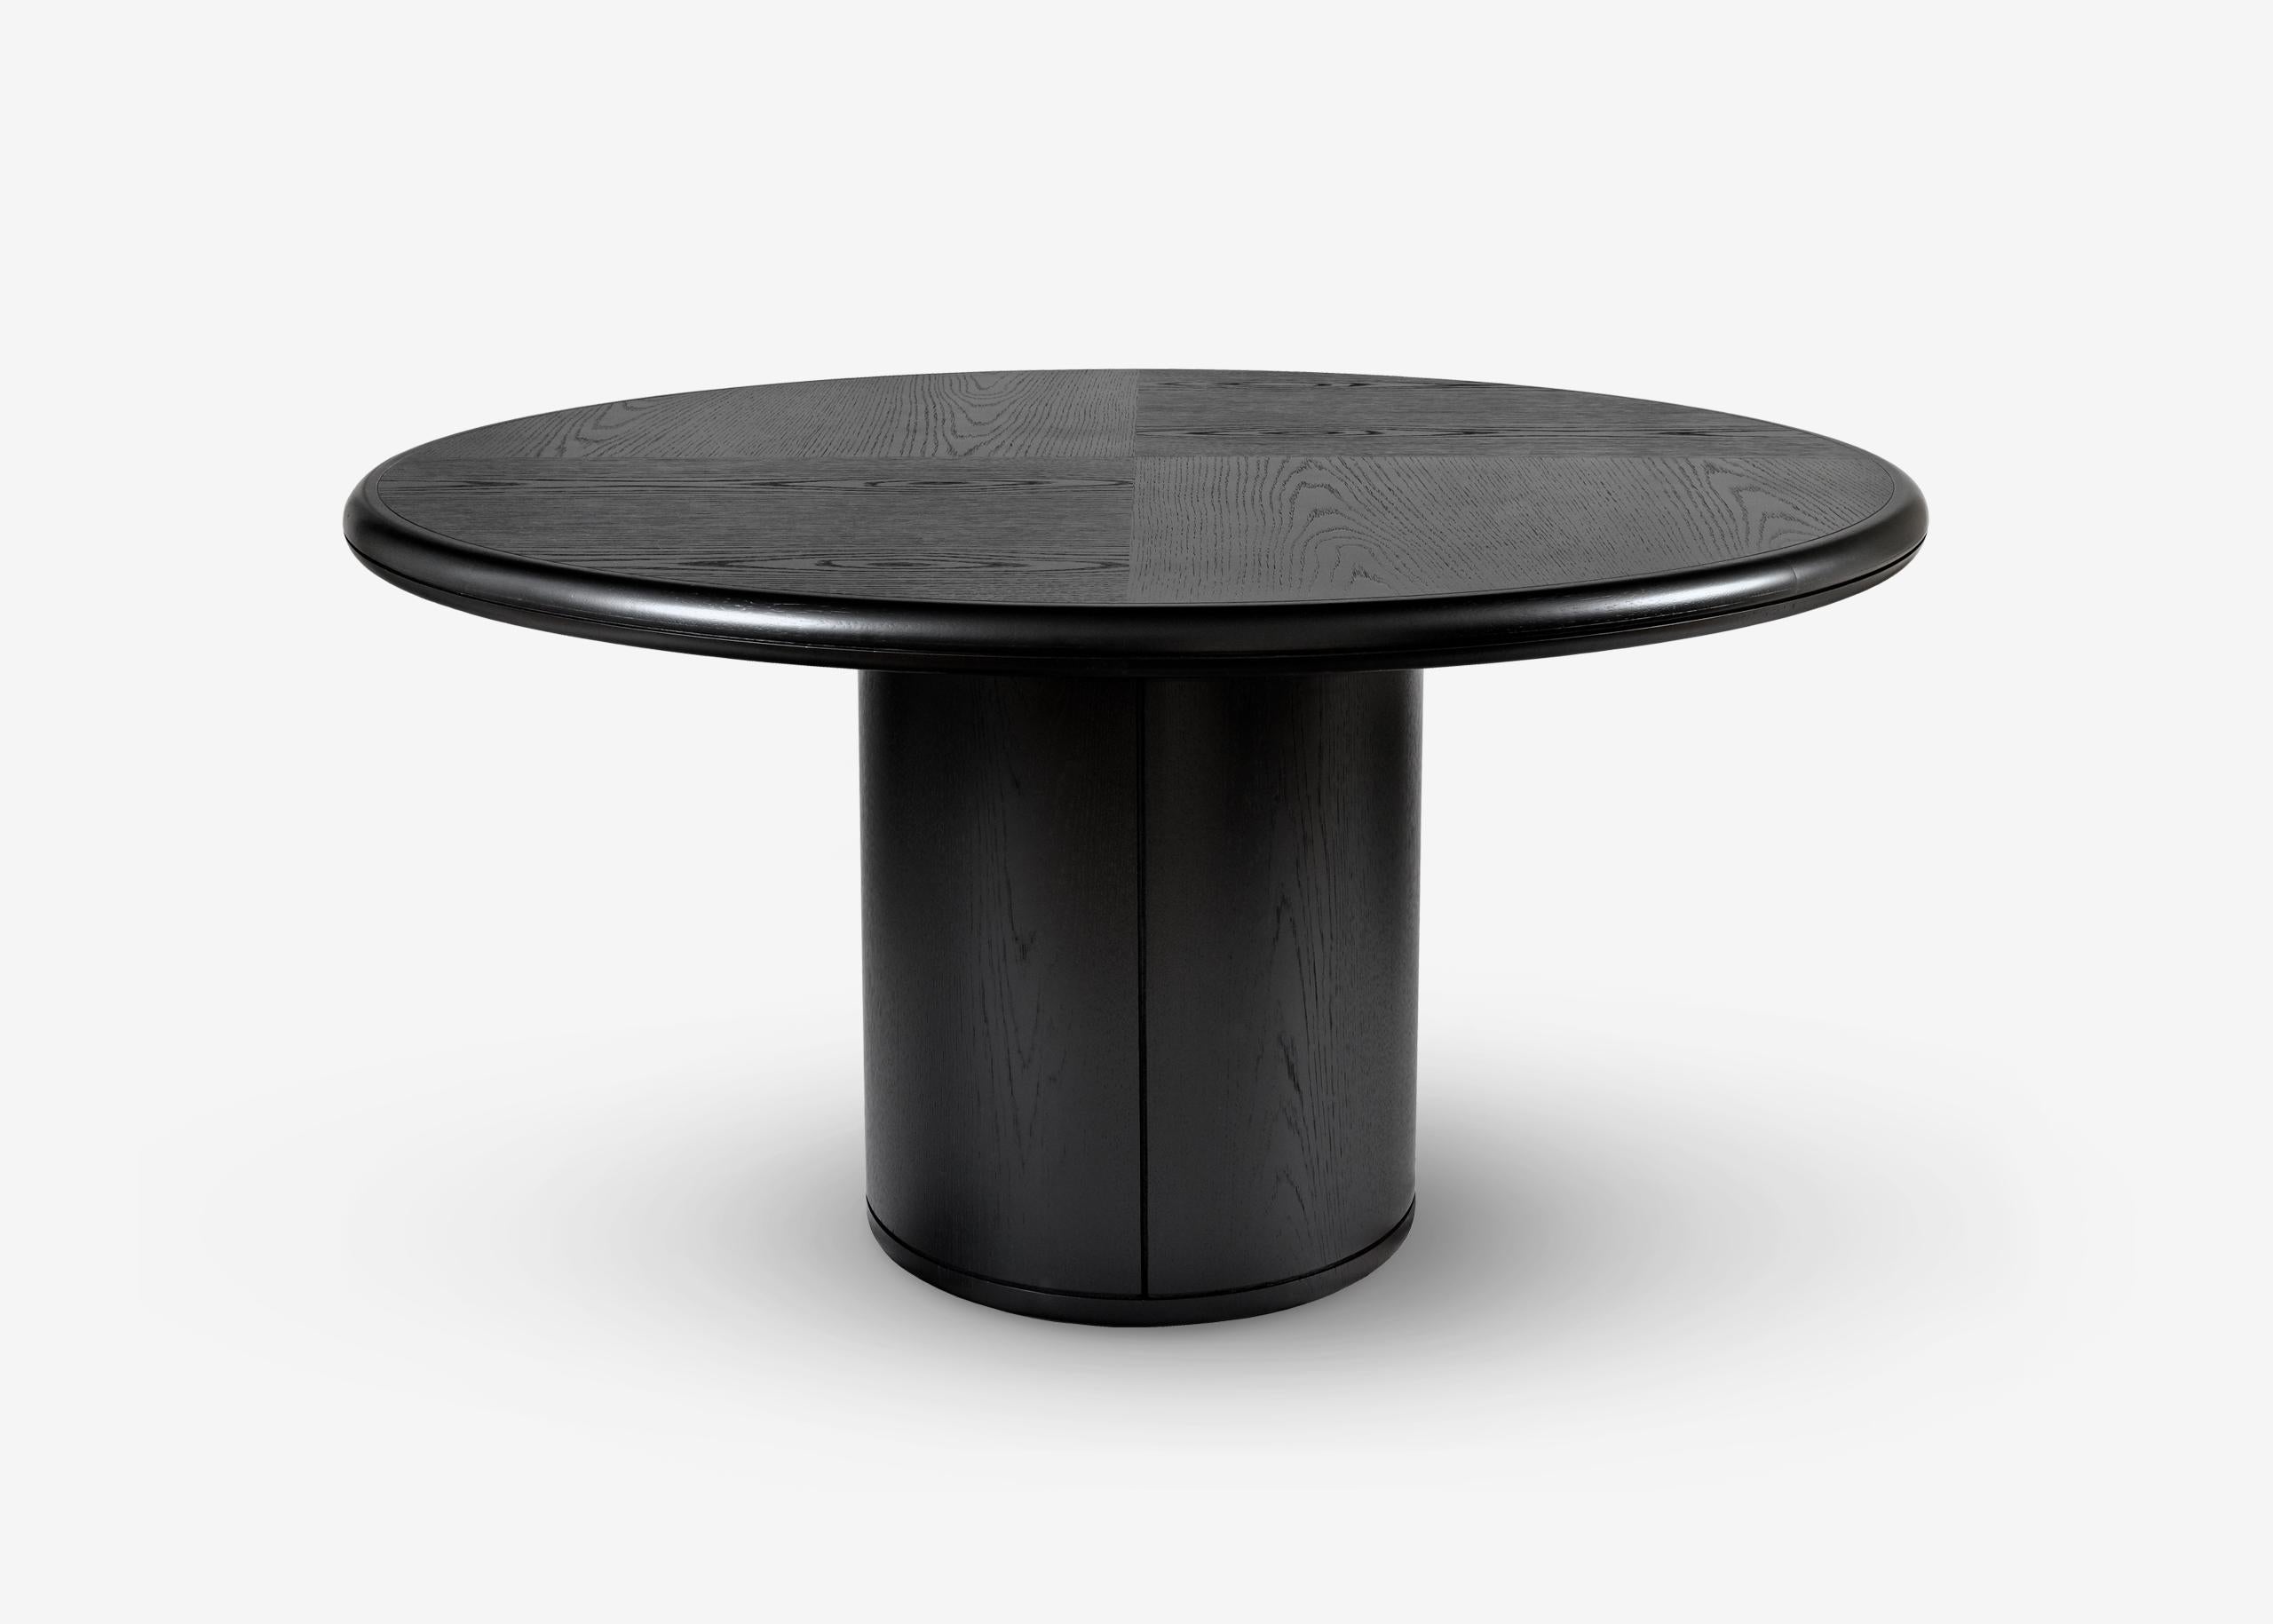 Table ronde noire Moon signée par Buket Hos¸can Bazman
Dimensions : Ø 160 x 75 cm
MATERIAL : Table de salle à manger en chêne noirci sablé

Disponible dans des dimensions et des finitions personnalisées.

Buket Hoscan Bazman est né à Izmir, en